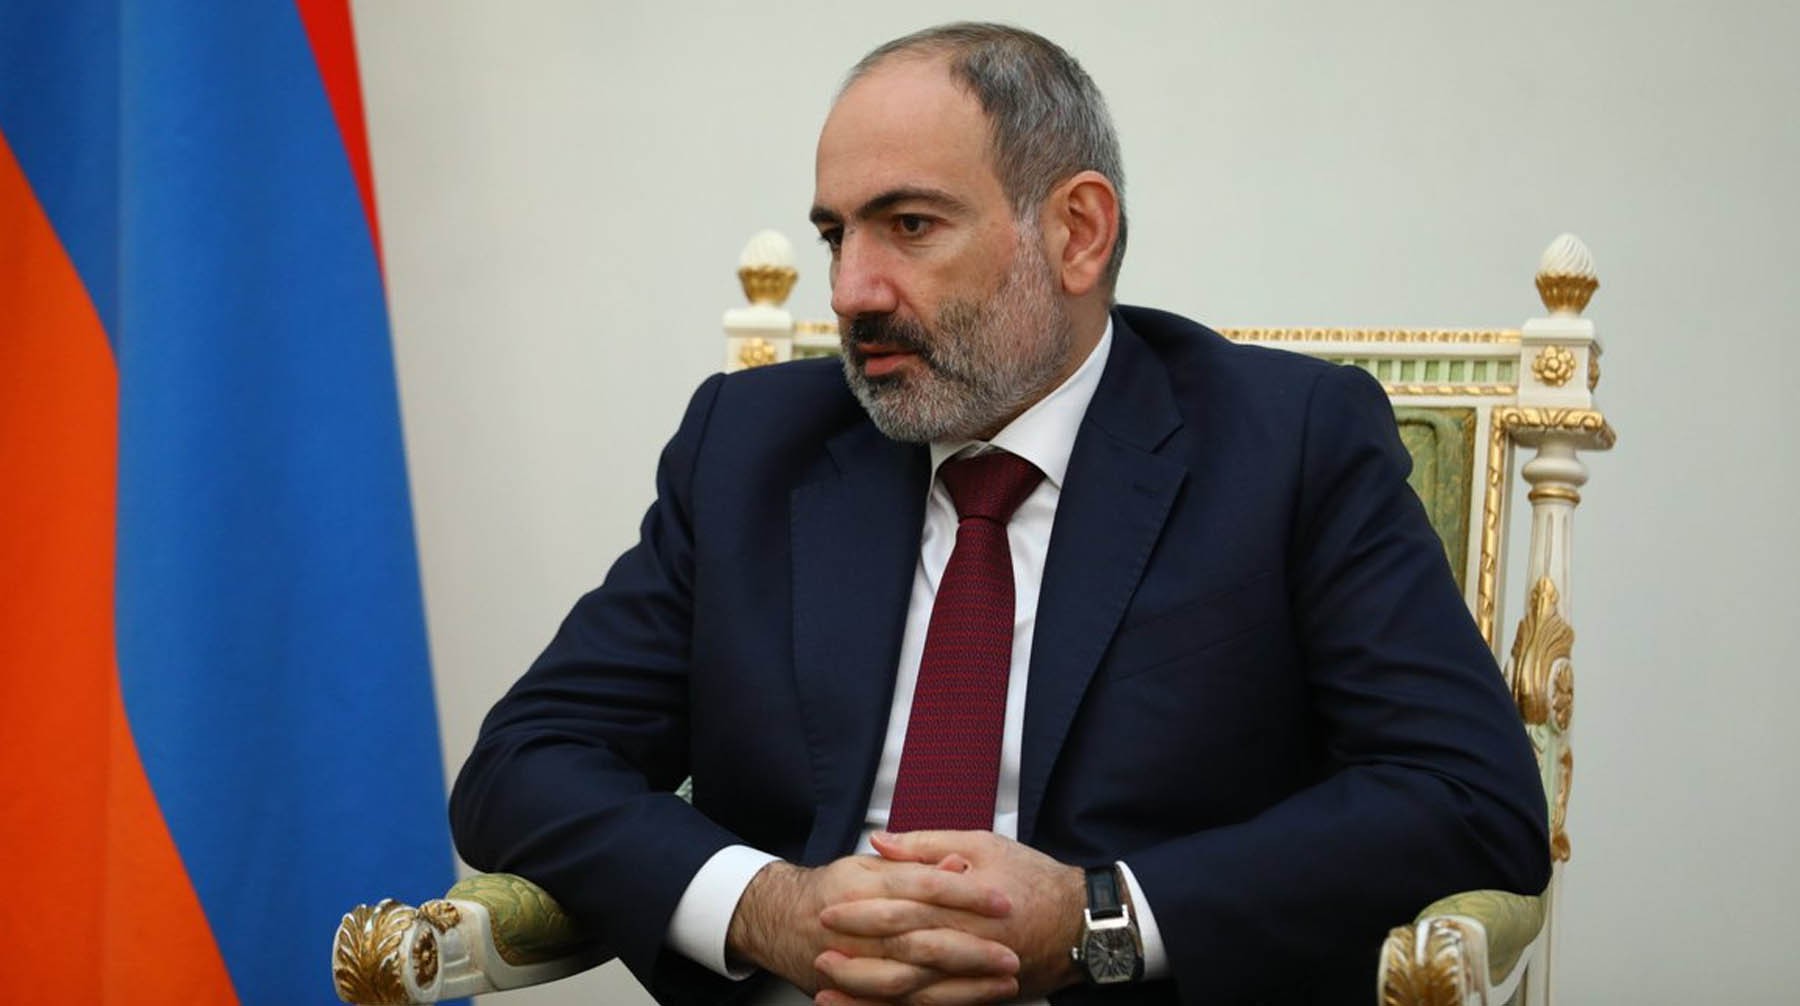 Dailystorm - Пашинян обвинил военных Армении в попытке госпереворота